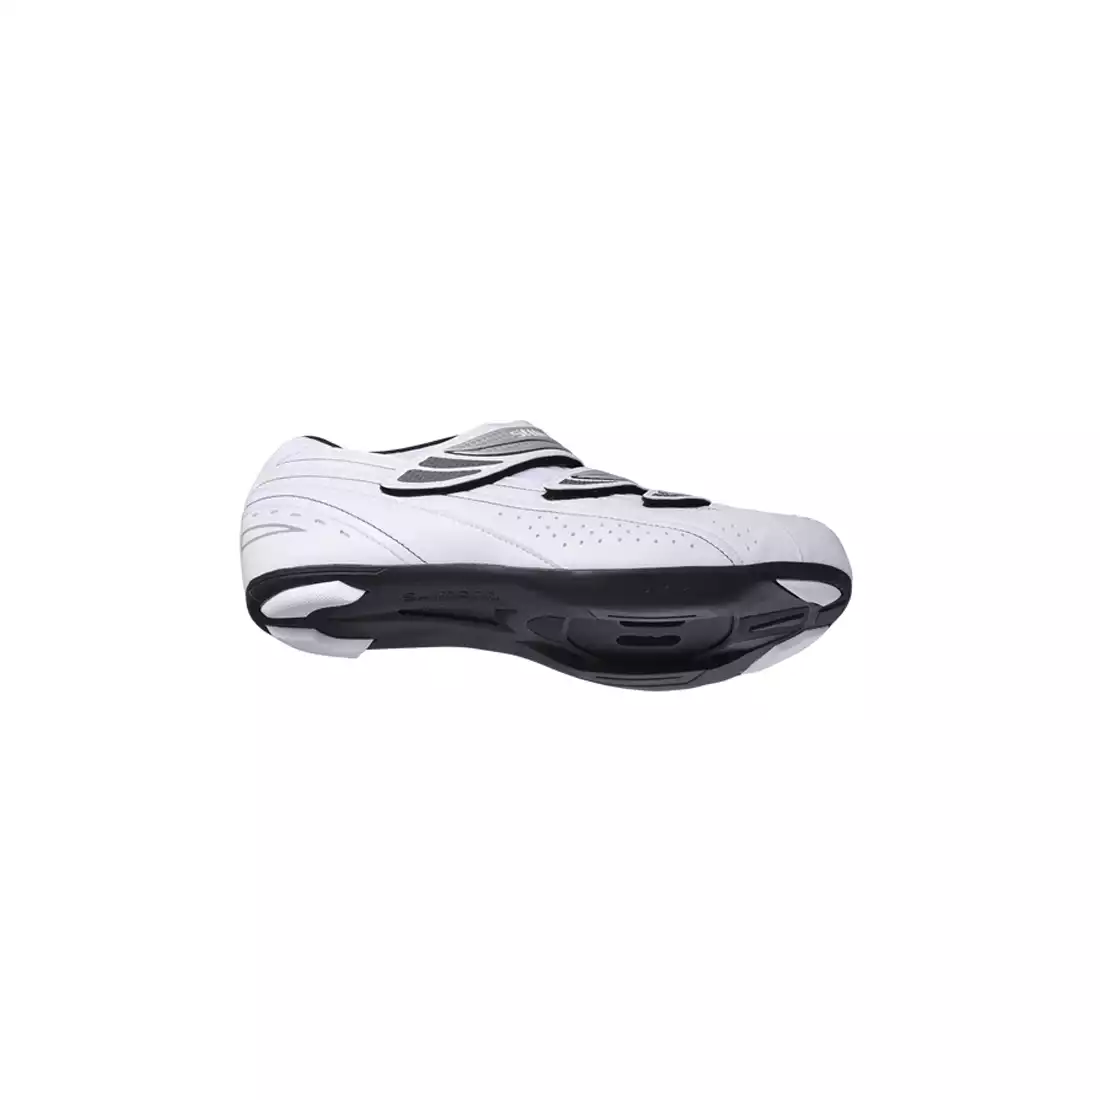 SHIMANO SH-WR35 - damskie buty szosowe, kolor: biały